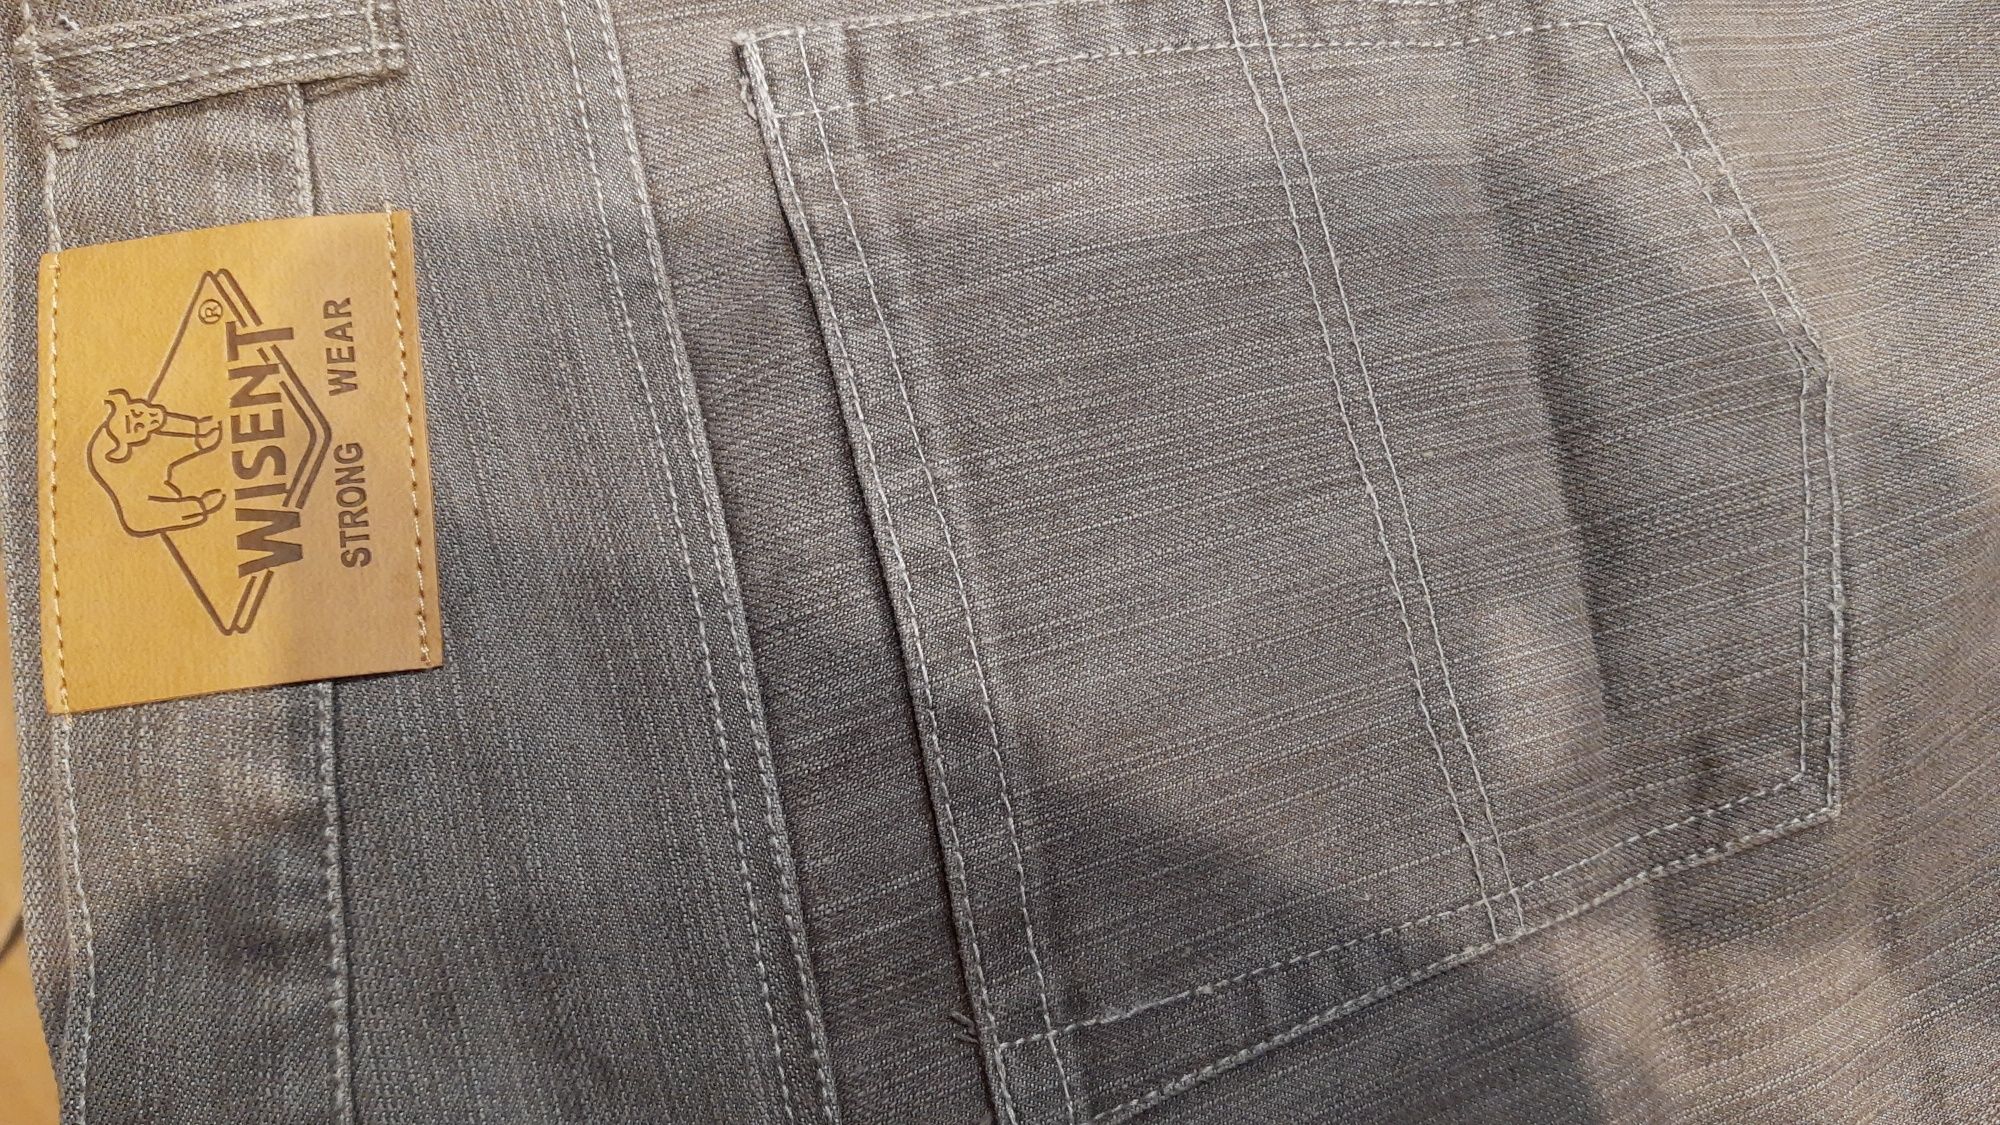 Spodnie cieki jeans szare duży rozmiar 48 z wadą